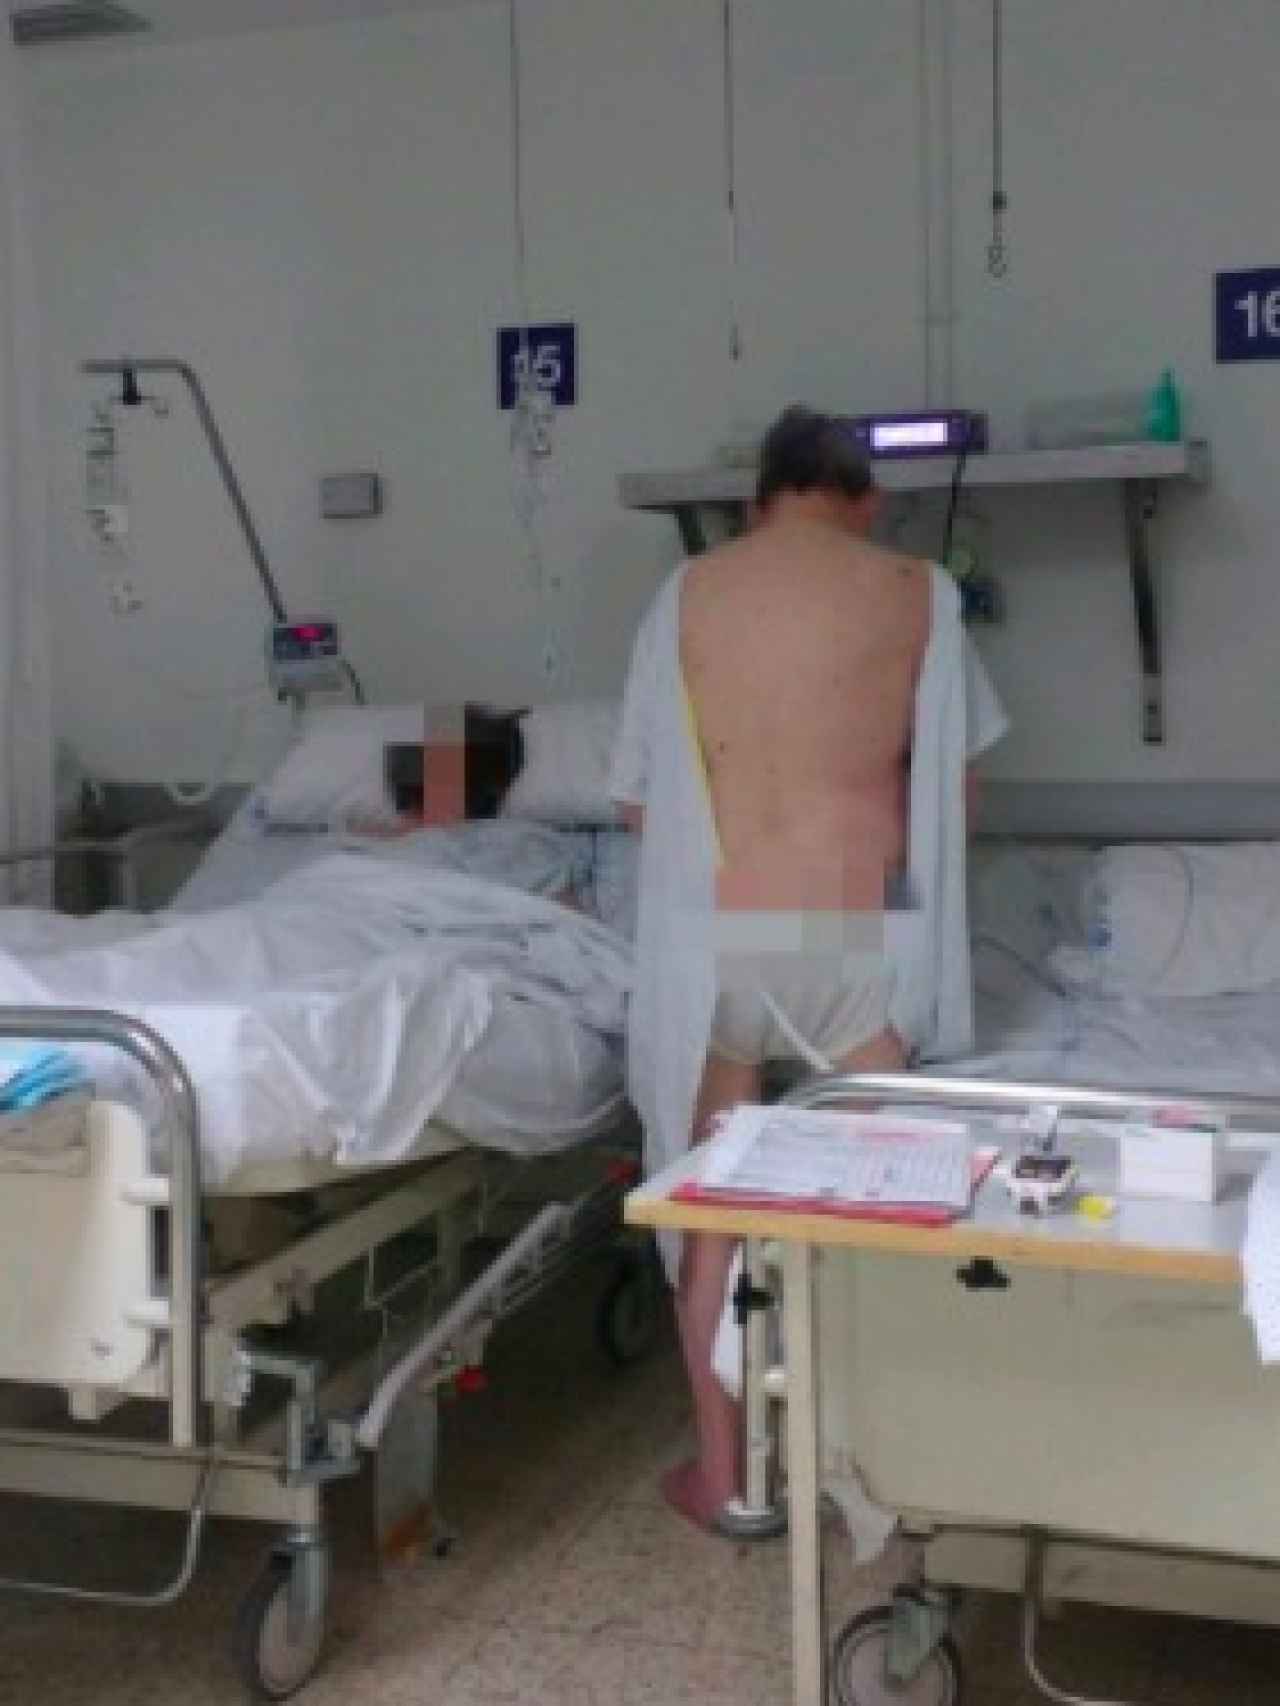 Un paciente orinando junto a otra enferma sin biombo que separe las camas en La Paz